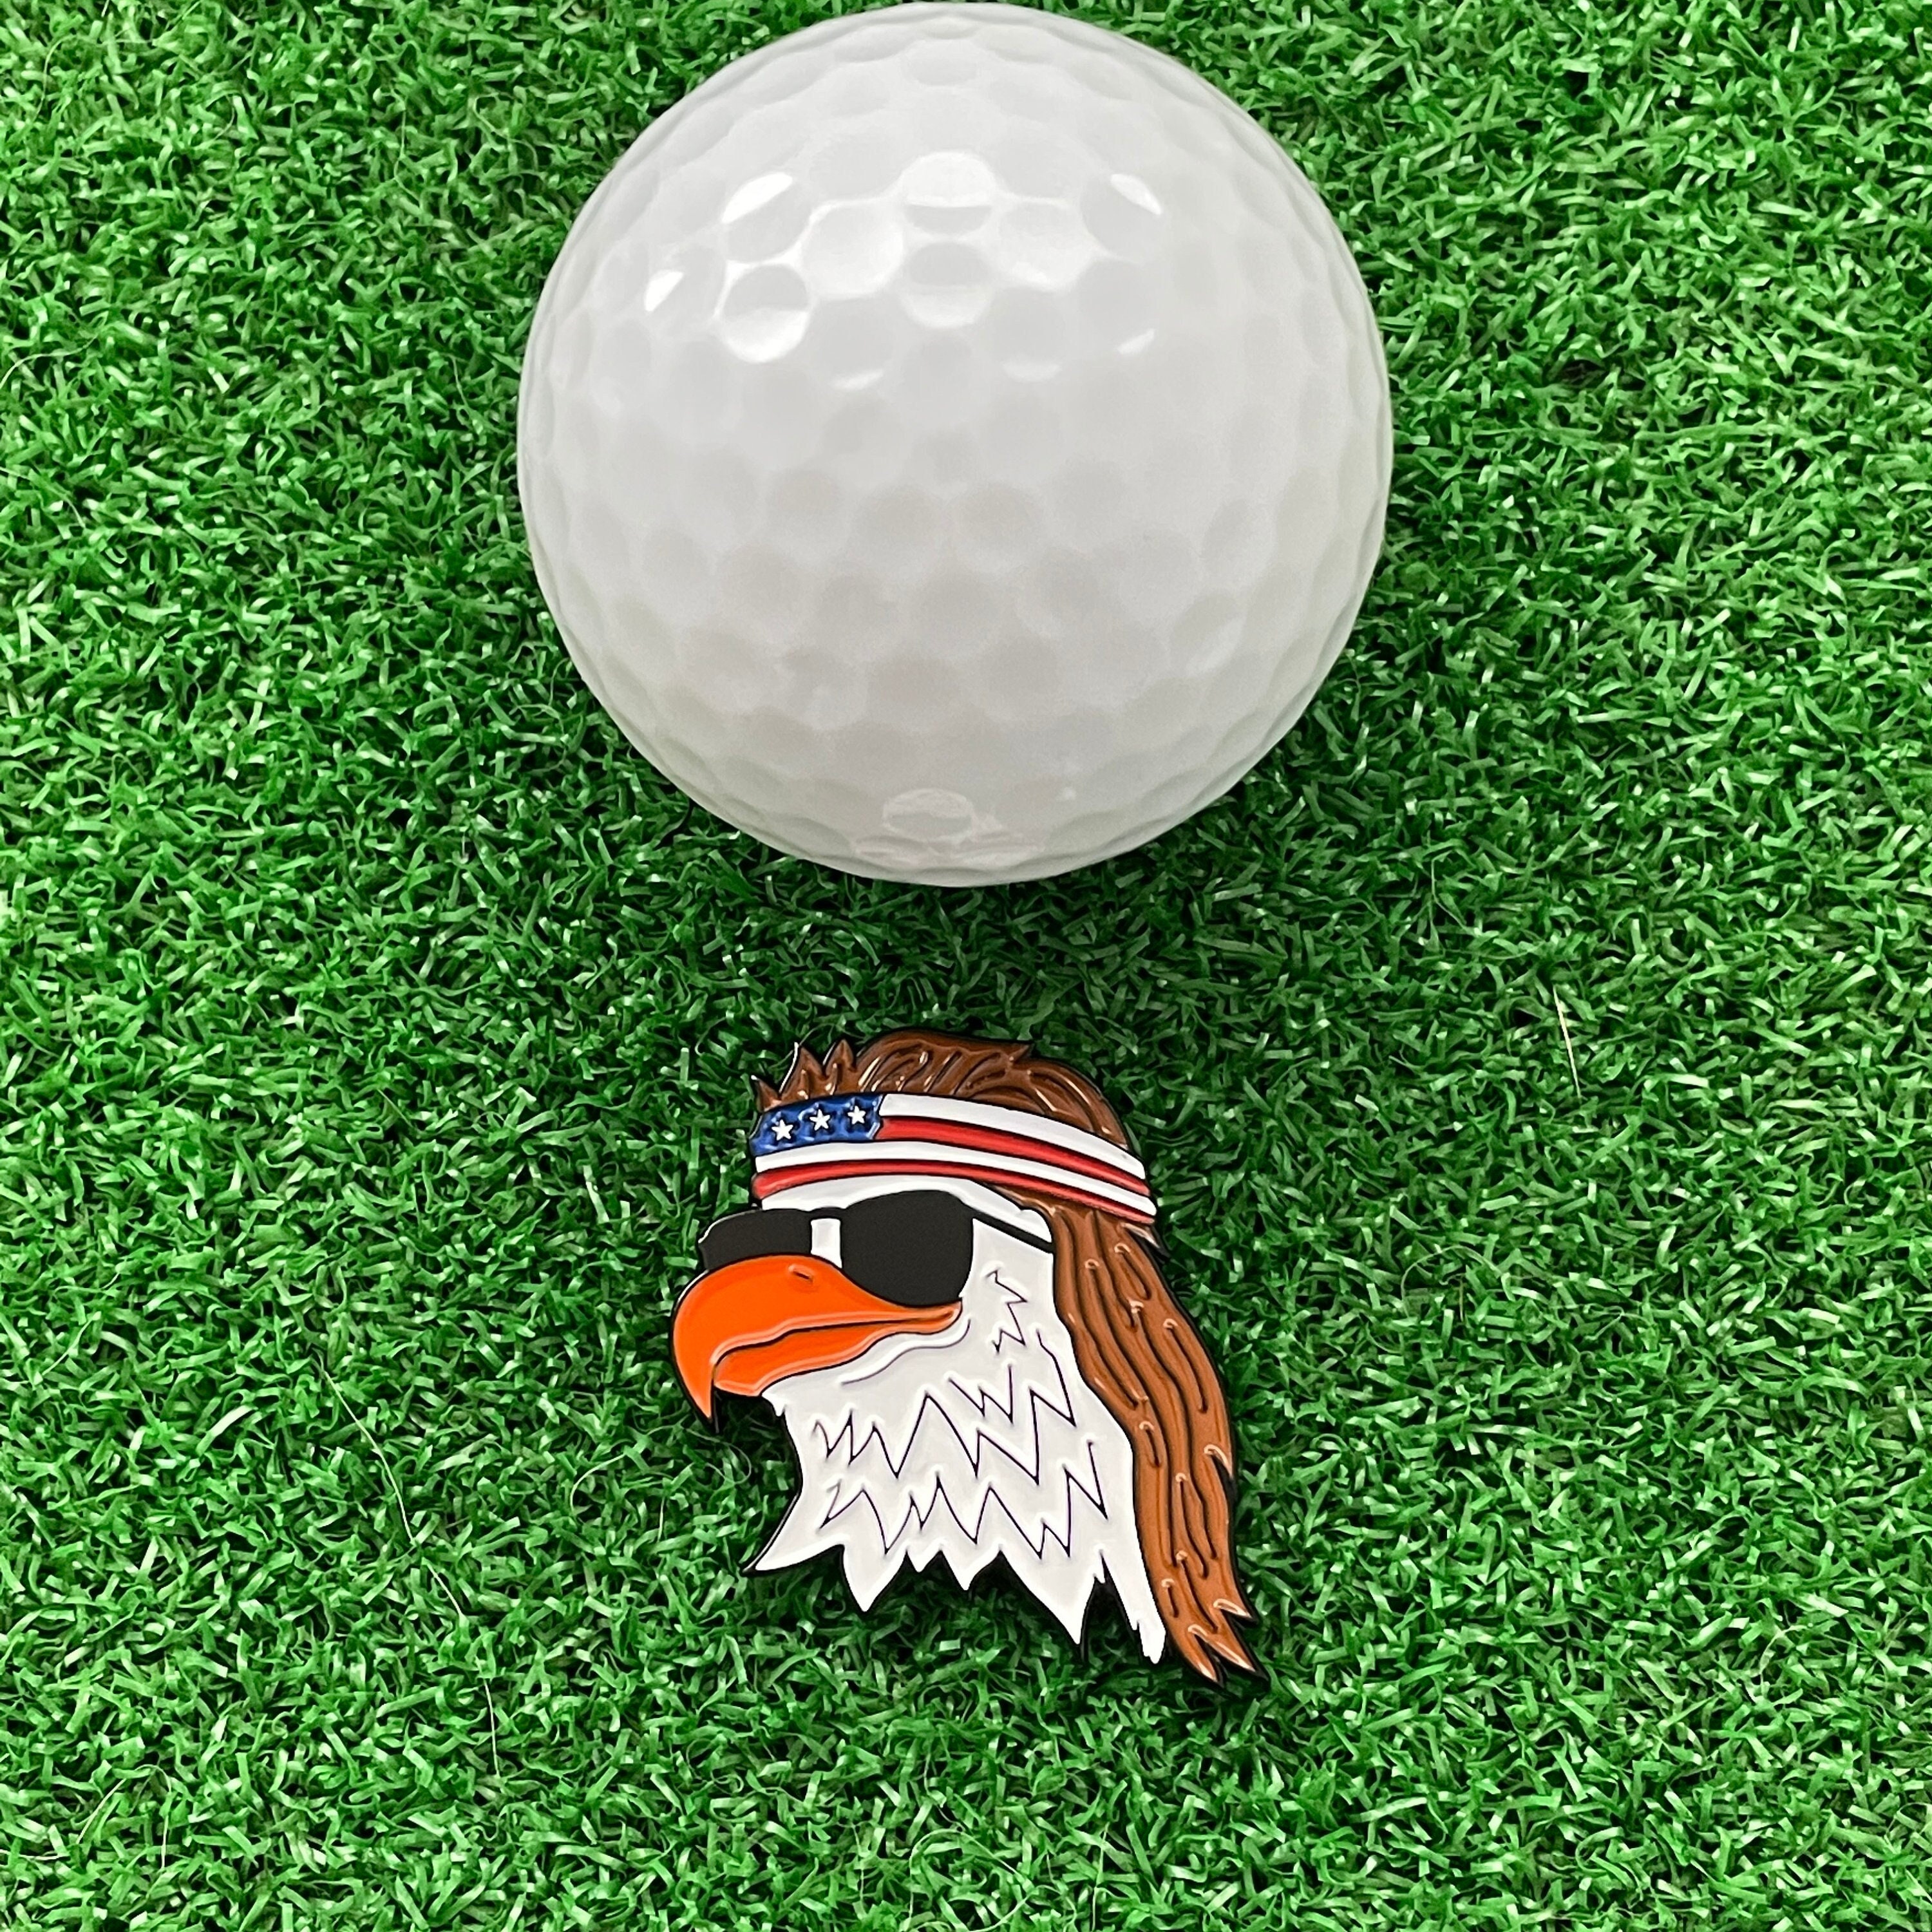 The Eagle Golf Gift Basket